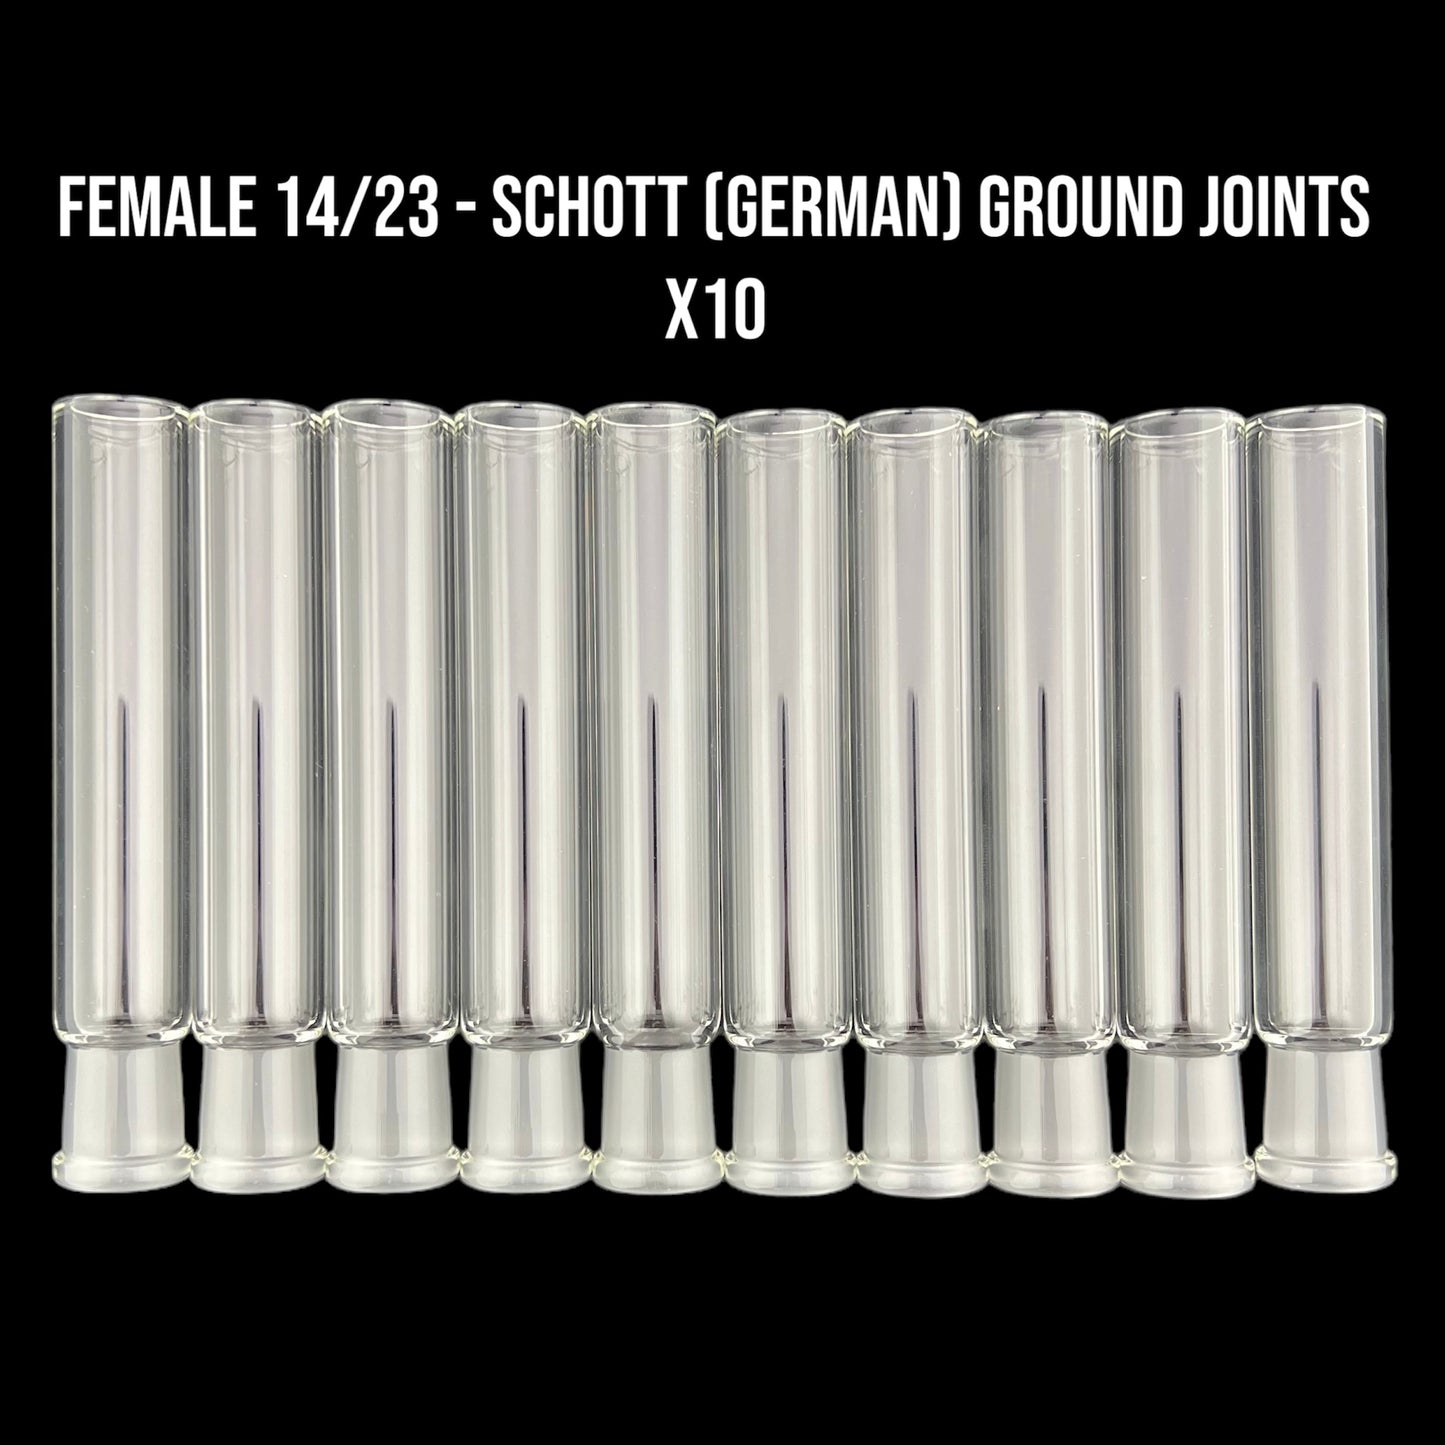 Juntas de tierra alemanas hembra de 14 mm - Accesorio de vidrio sobre vidrio 14/23 - Pared pesada Bistabil - Vidrio de borosilicato Schott - COE 33